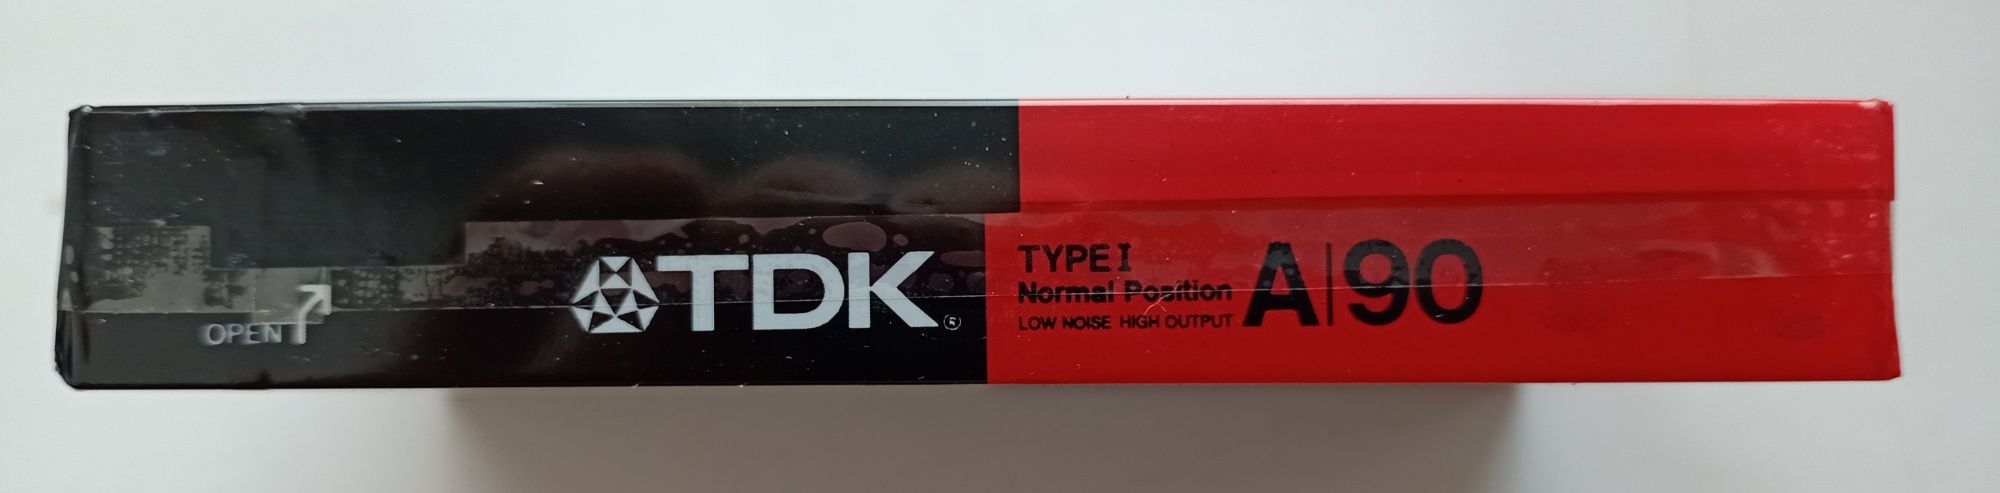 Винтажная кассета TDK A90 Made in Japan